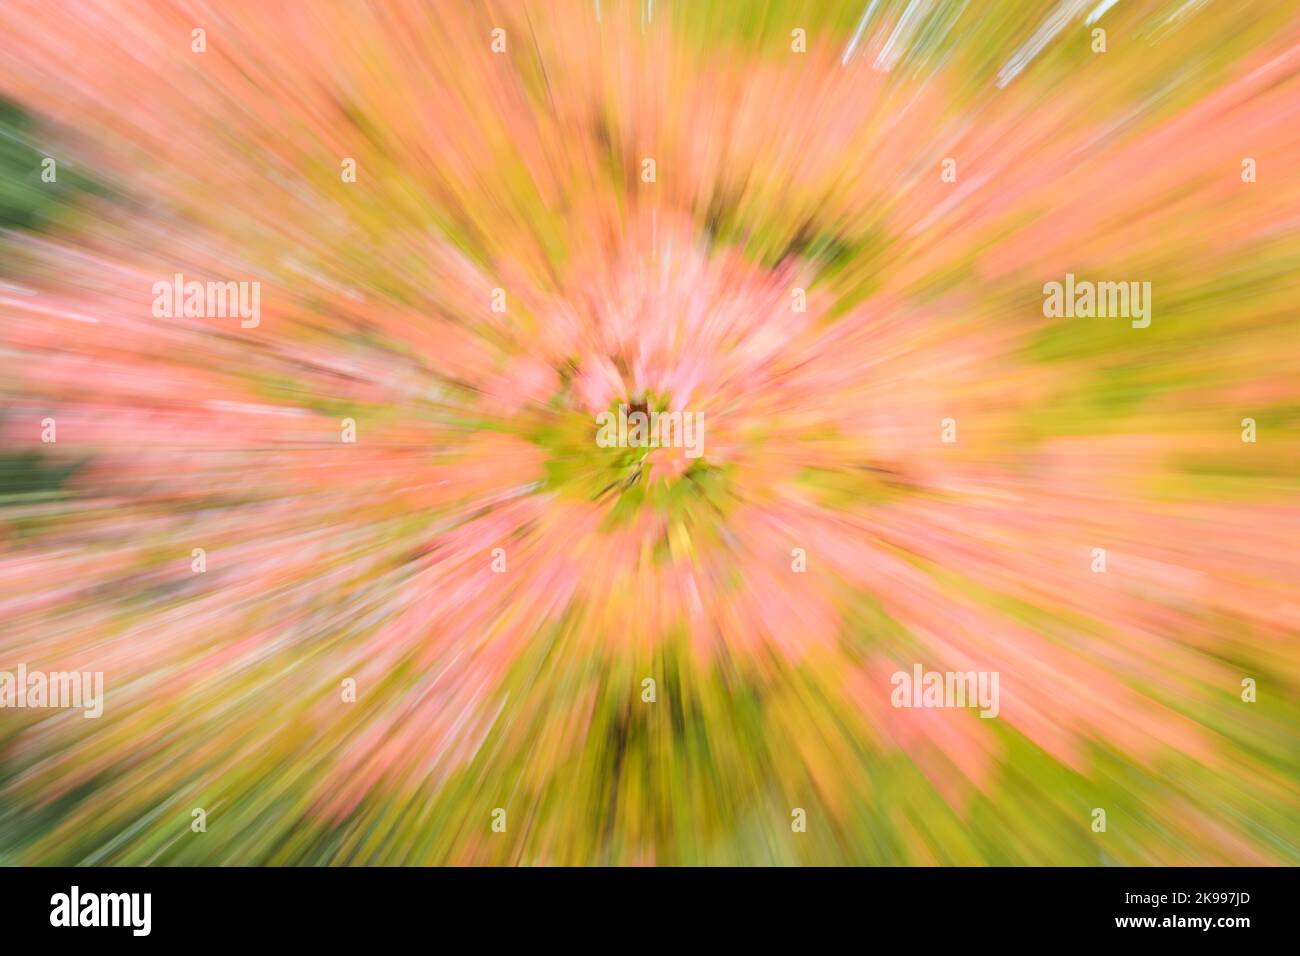 Effetto zoom astratto su un albero autunnale con foglie colorate che creavano strisce radianti di colore autunnale Foto Stock